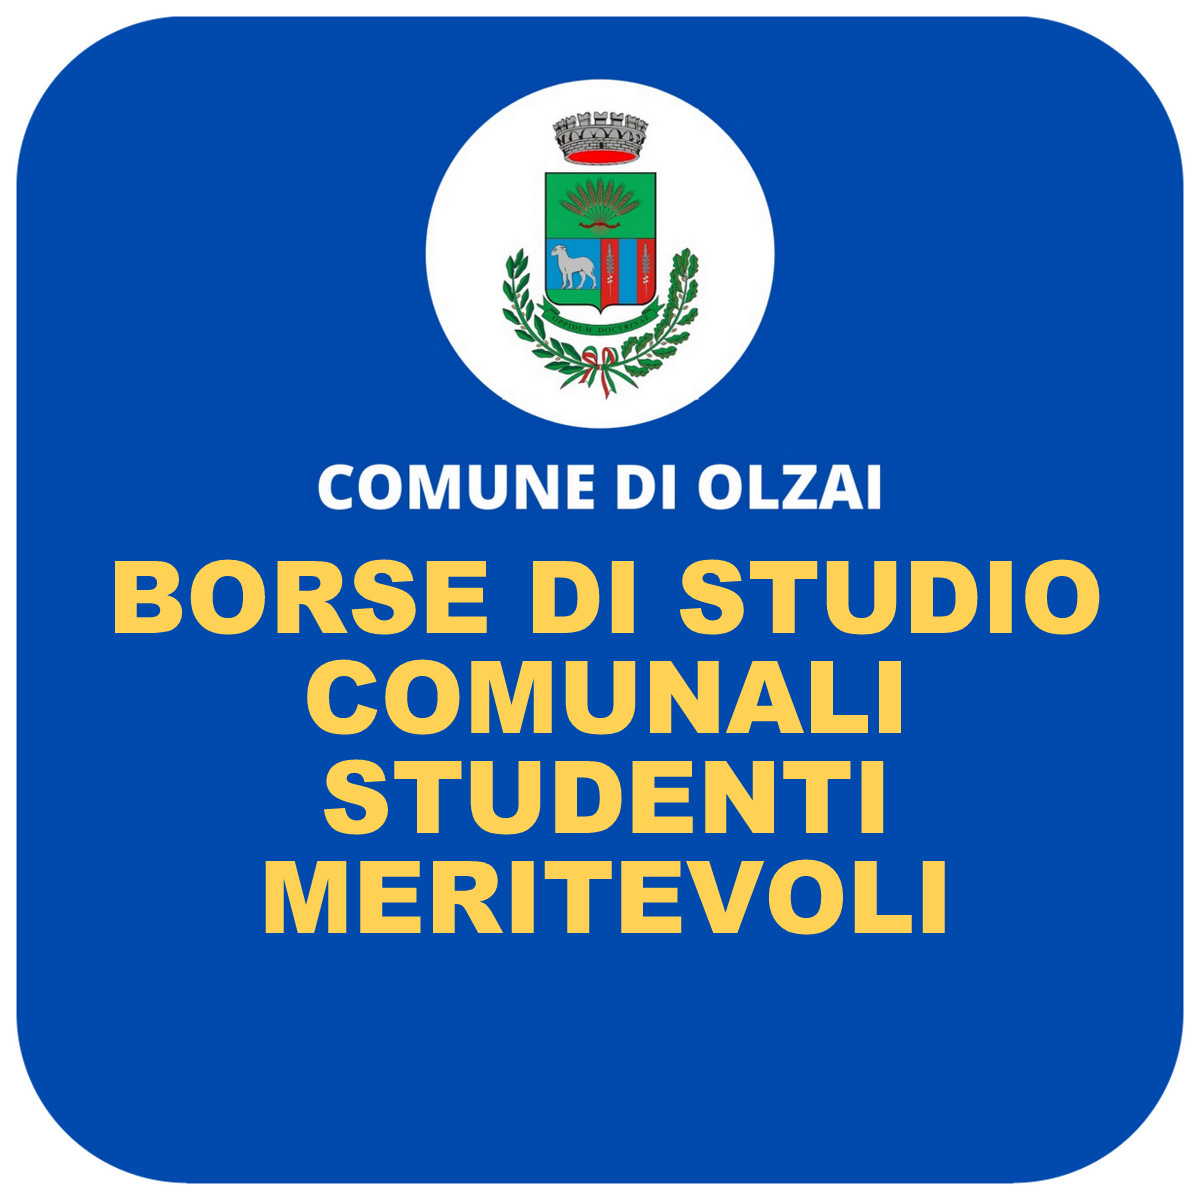 BORSE DI STUDIO COMUNALI STUDENTI MERITEVOLI A.S. 2022/2023 - SCADENZA DOMANDE 22/12/2023 ore  14